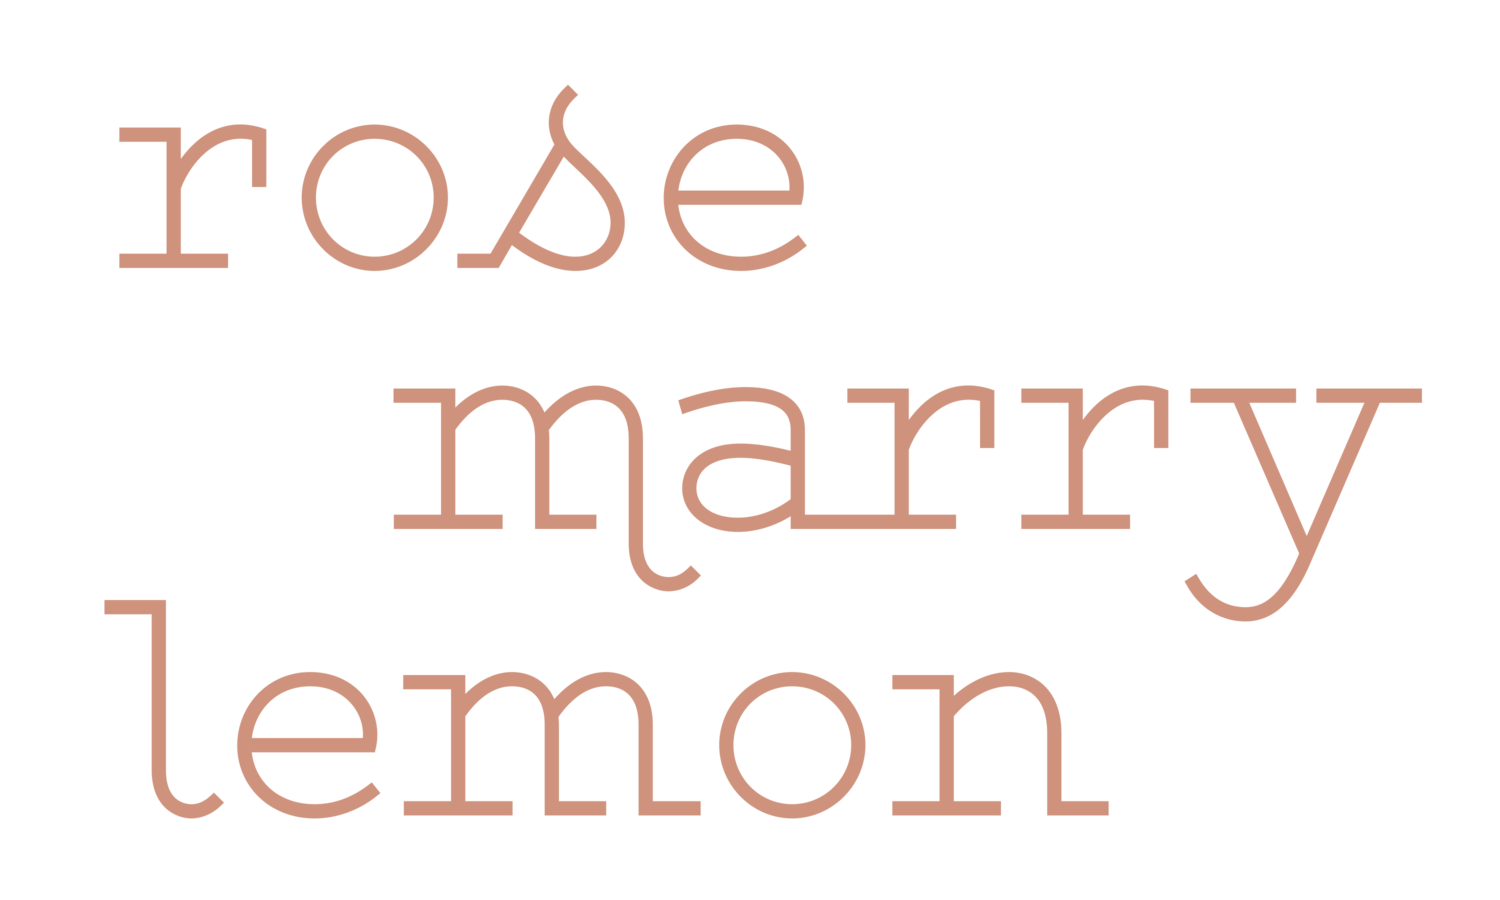 rosemarrylemon